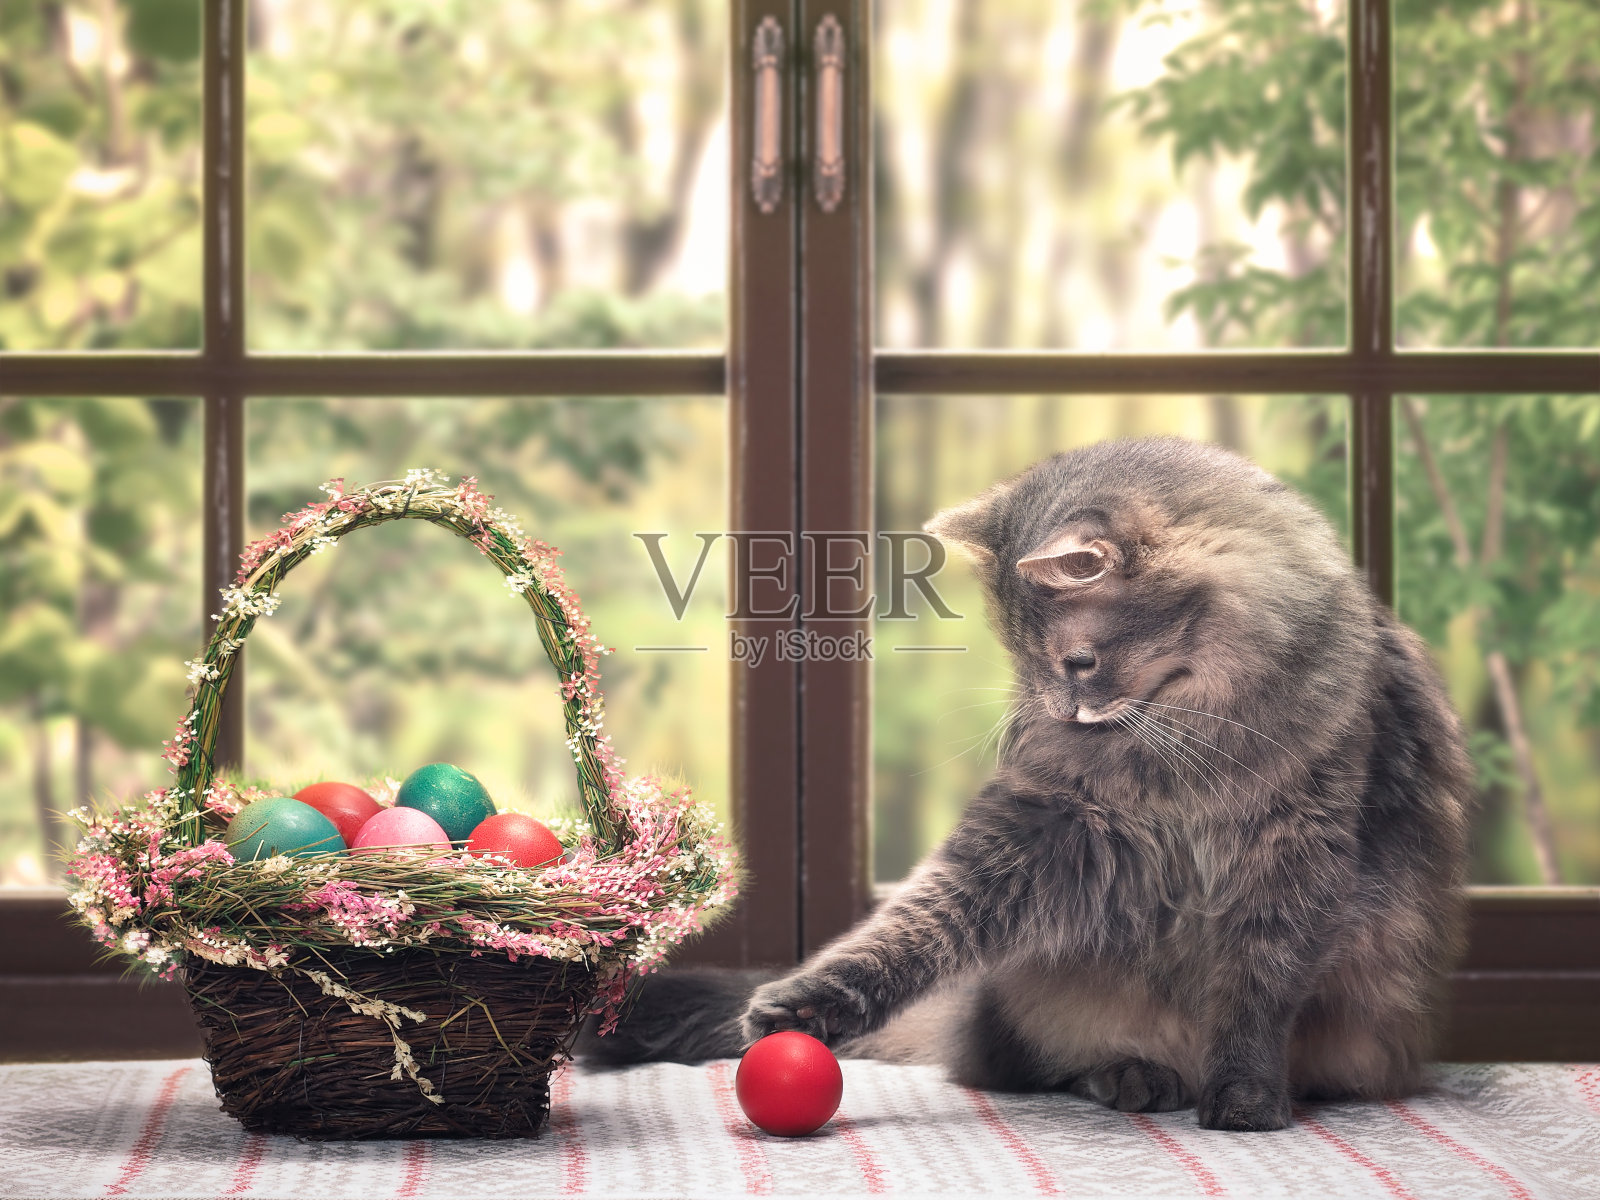 猫在玩红鸡蛋。一篮子漂亮的复活节彩蛋照片摄影图片